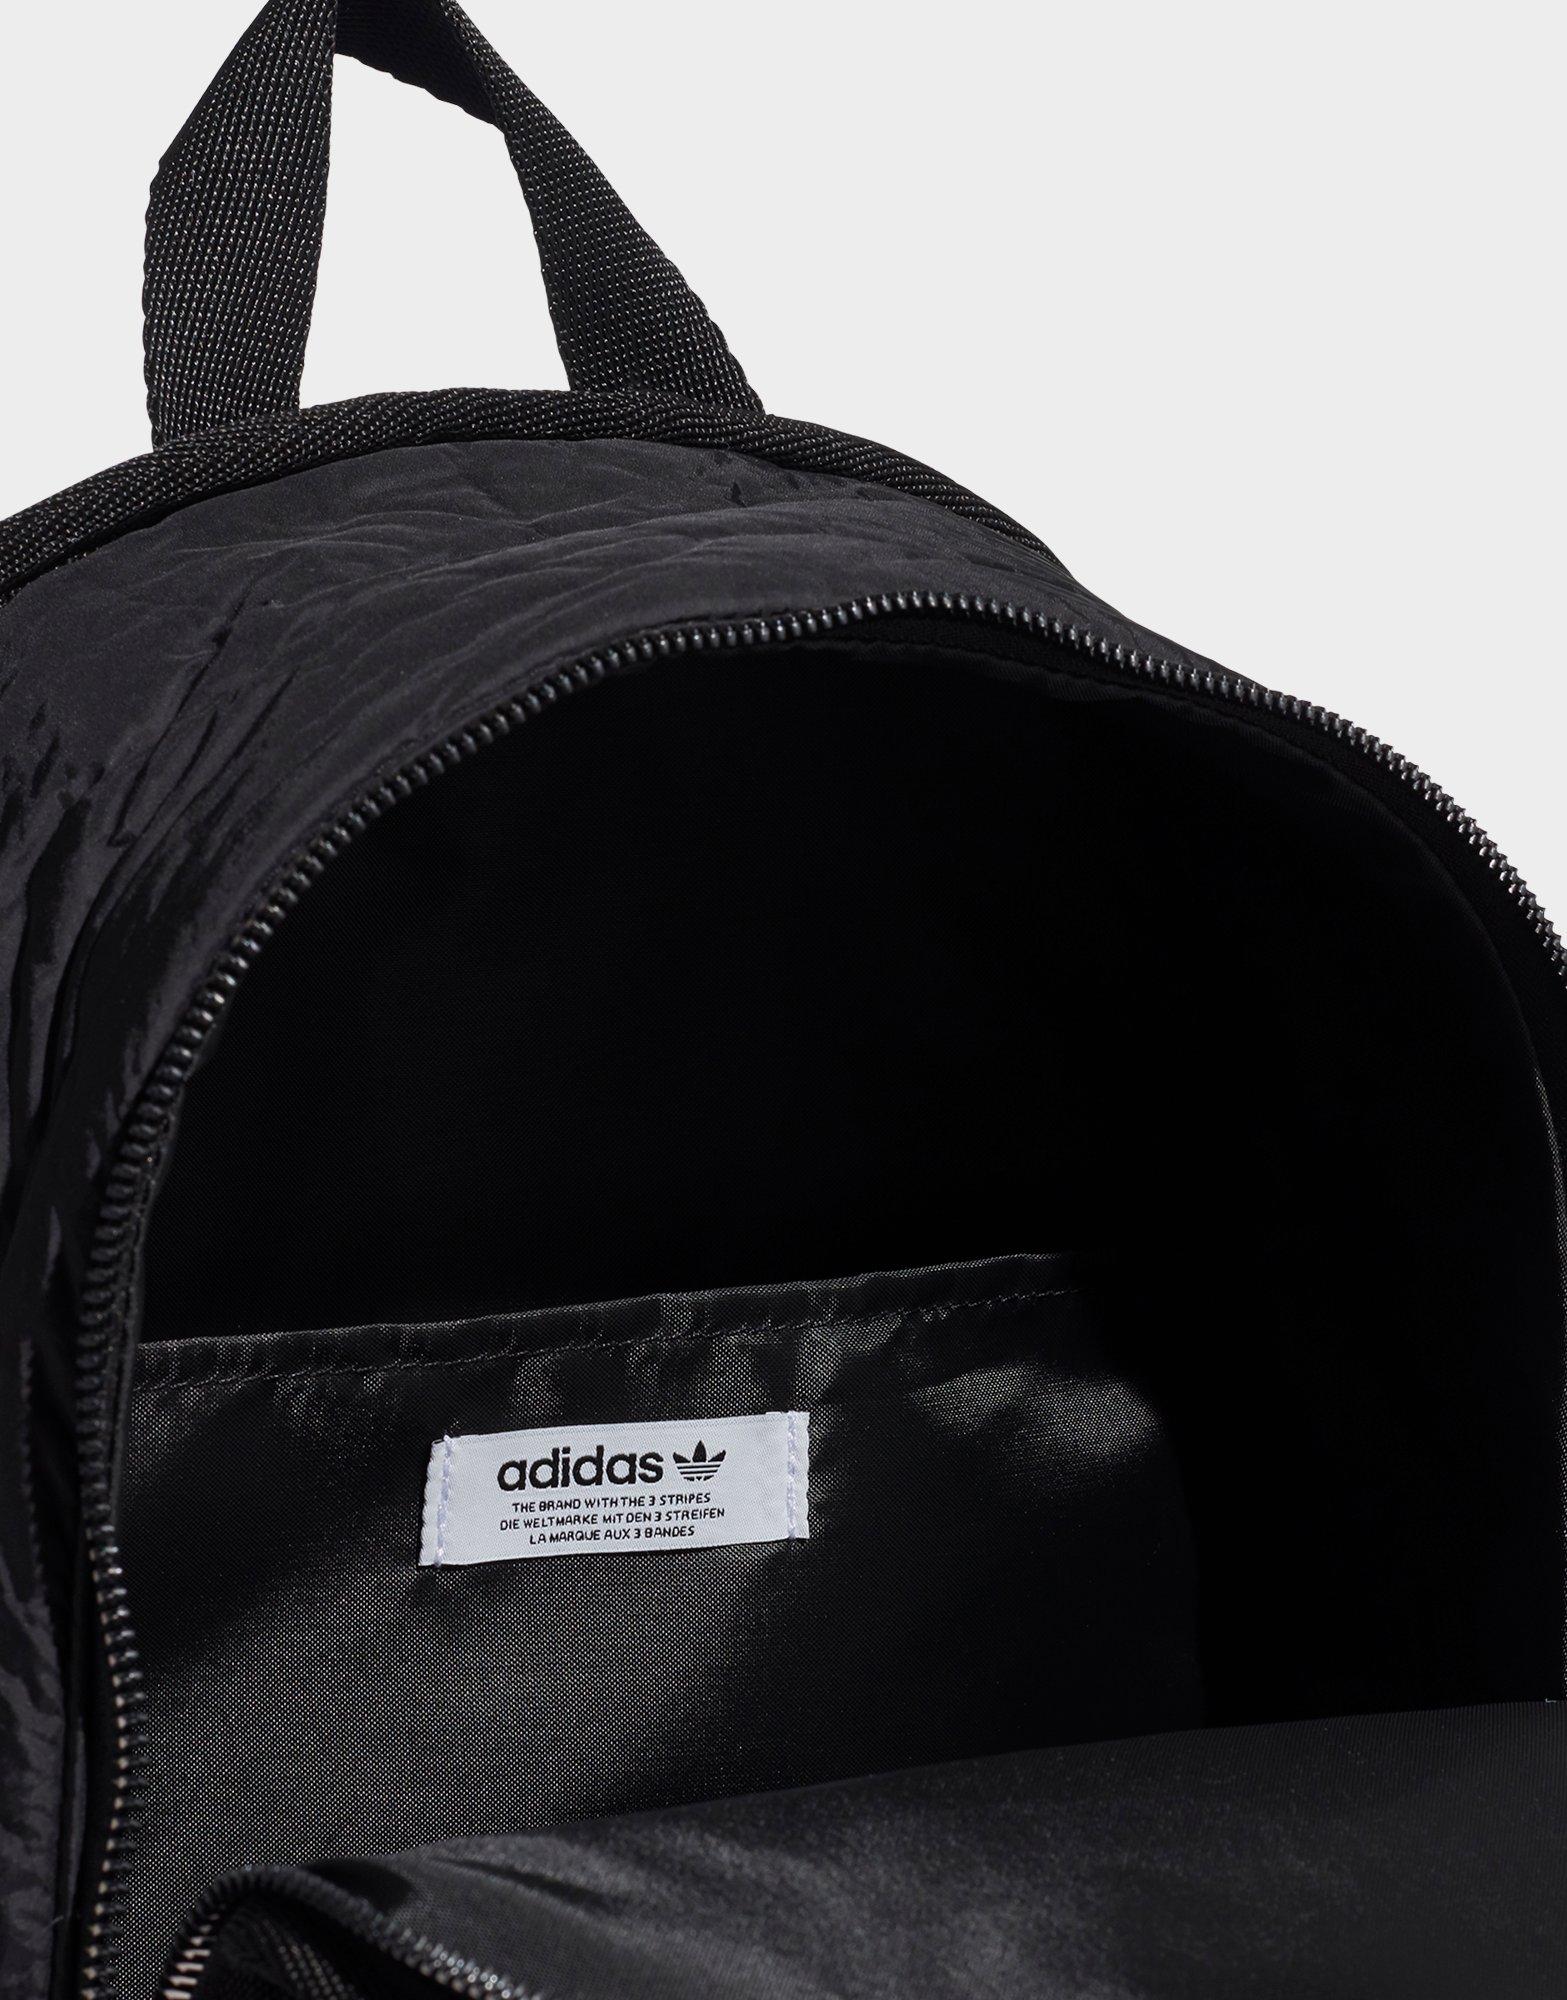 adidas orginals backpack